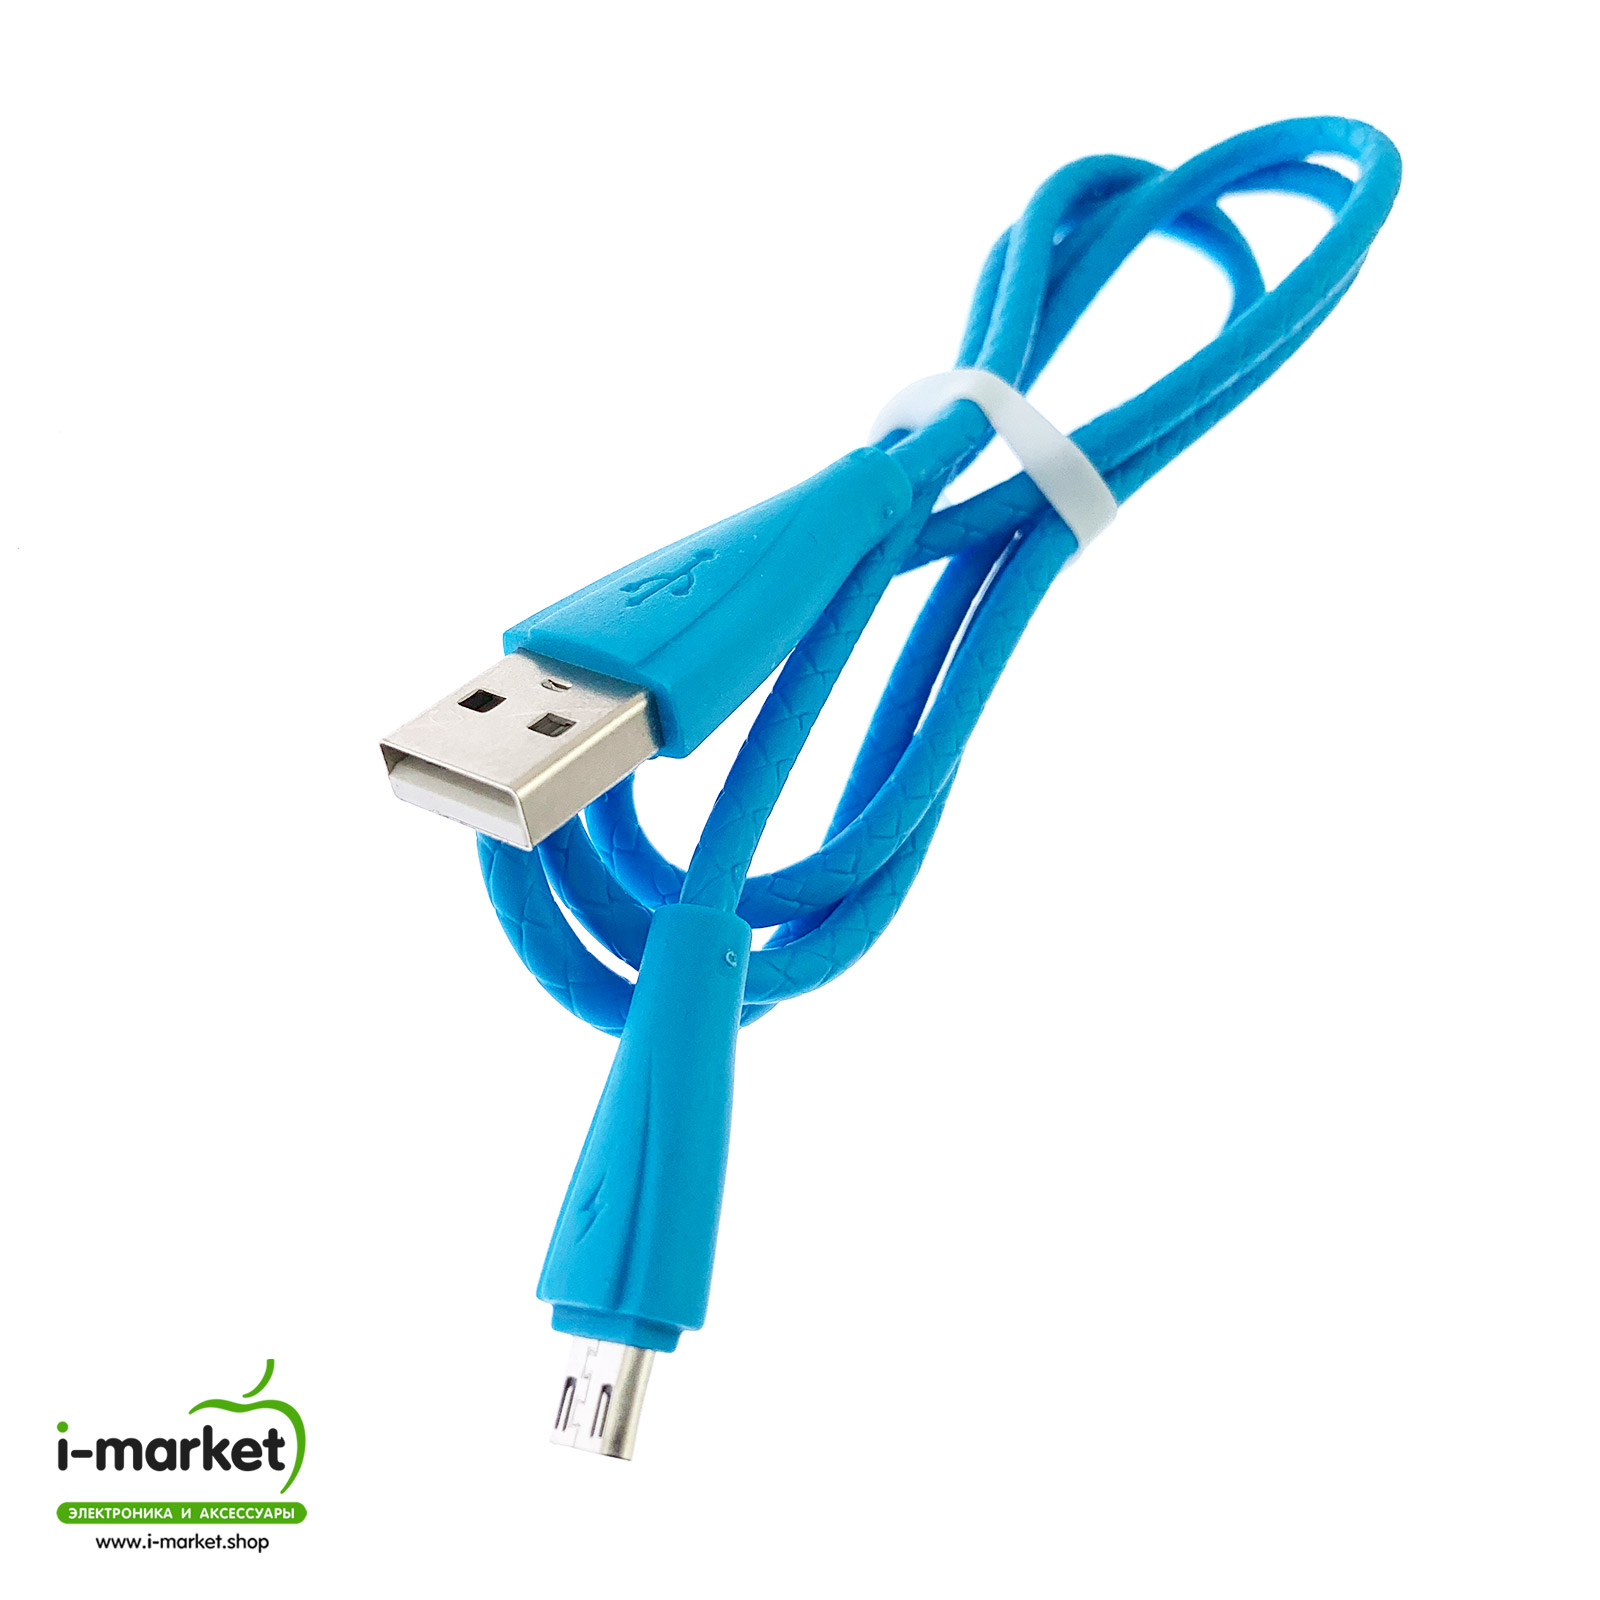 USB Дата кабель Micro USB, силиконовый, текстурированная оплетка, длина 1 метр, цвет синий.